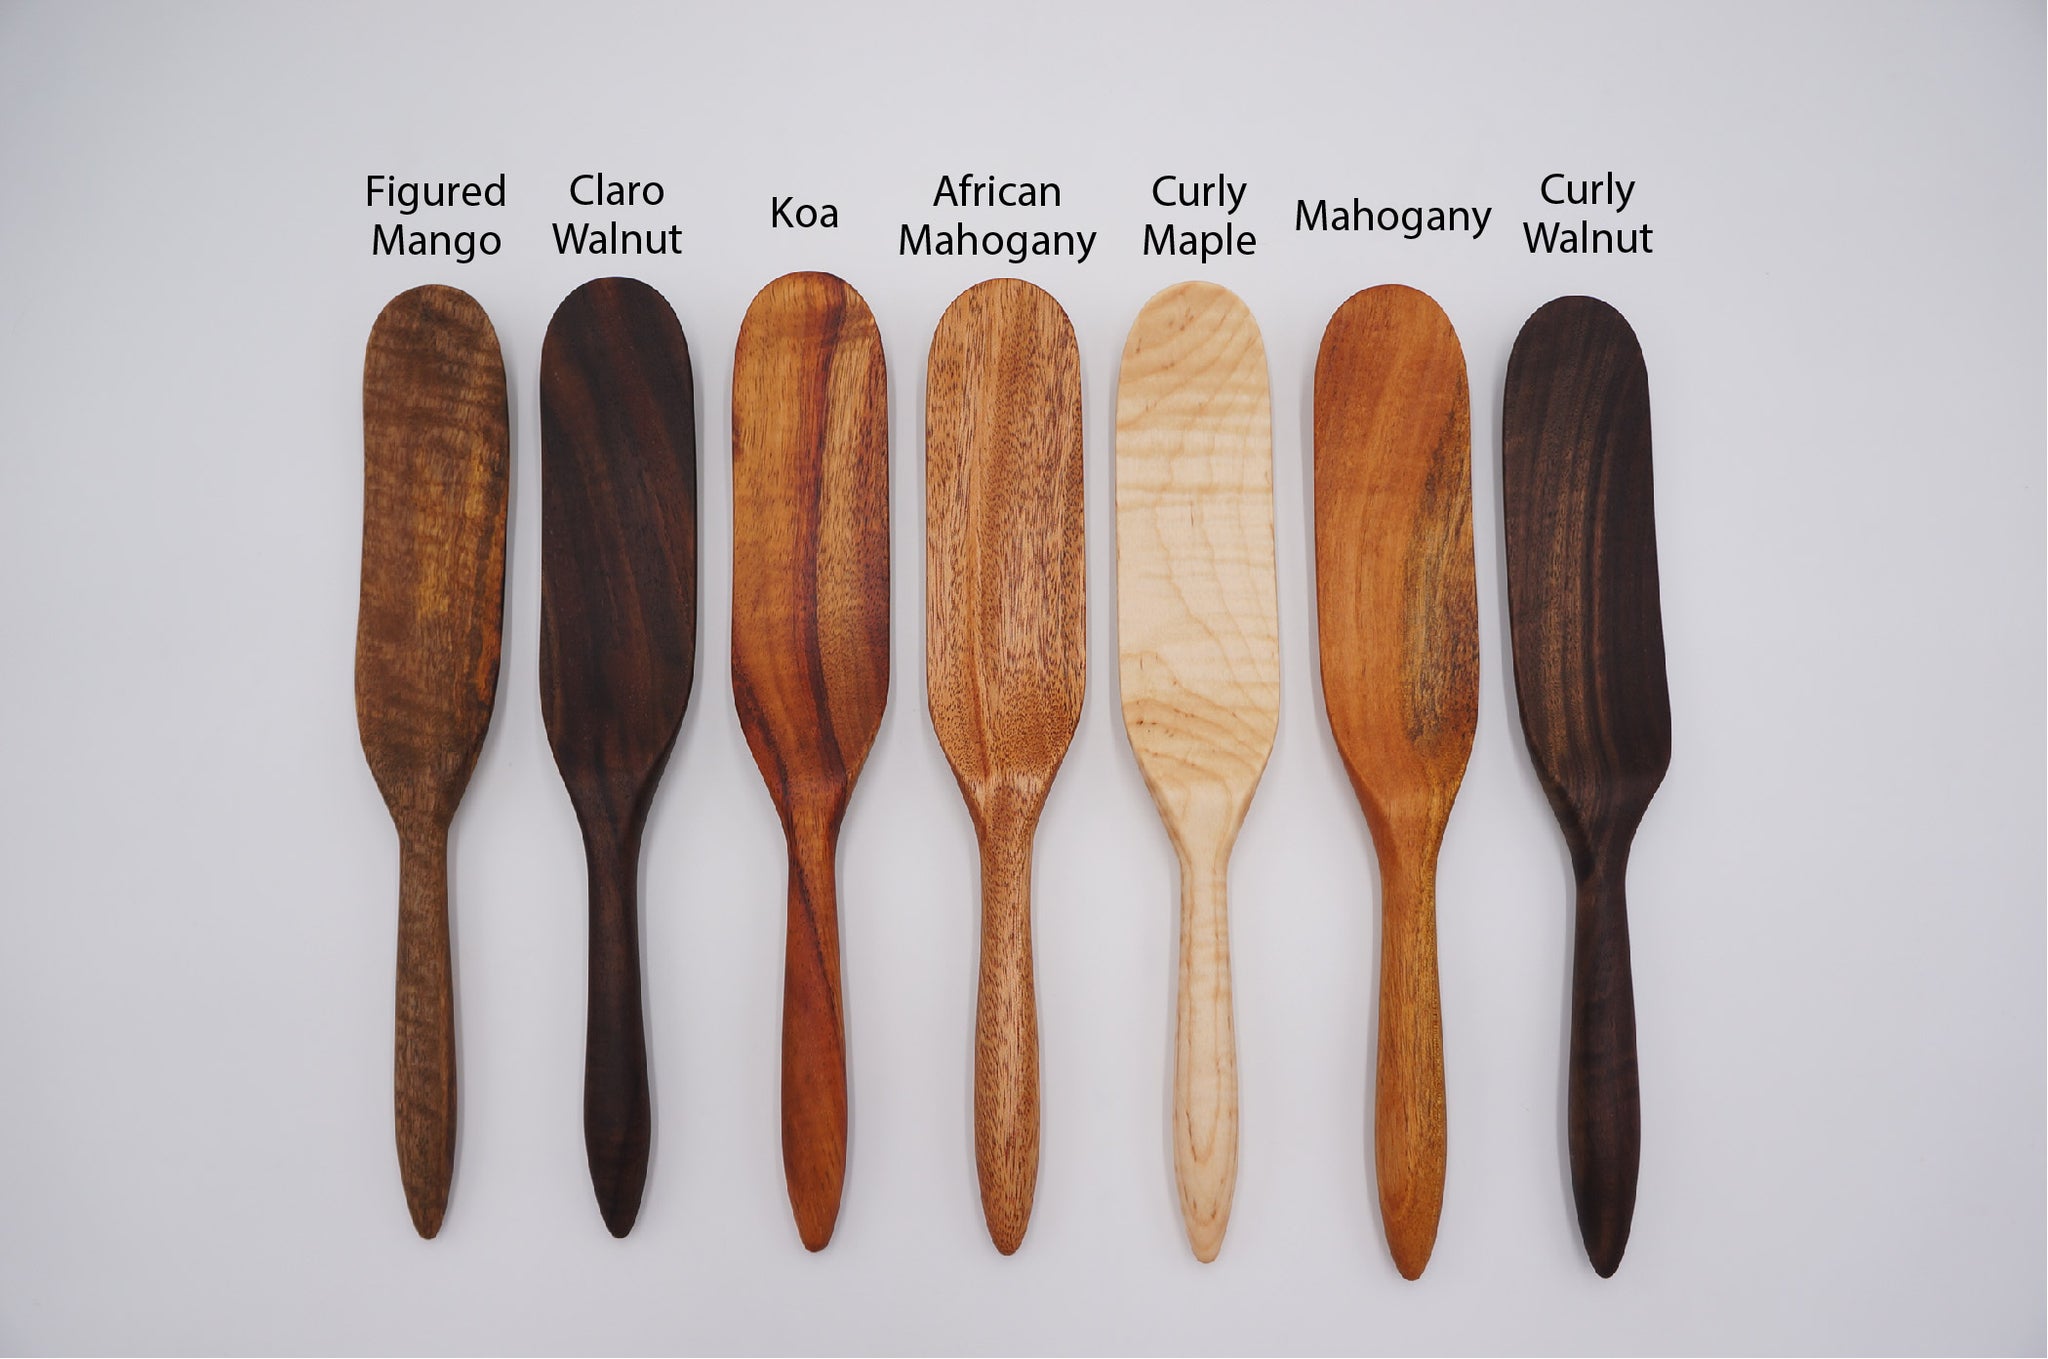 Handmade Wooden Spurtles